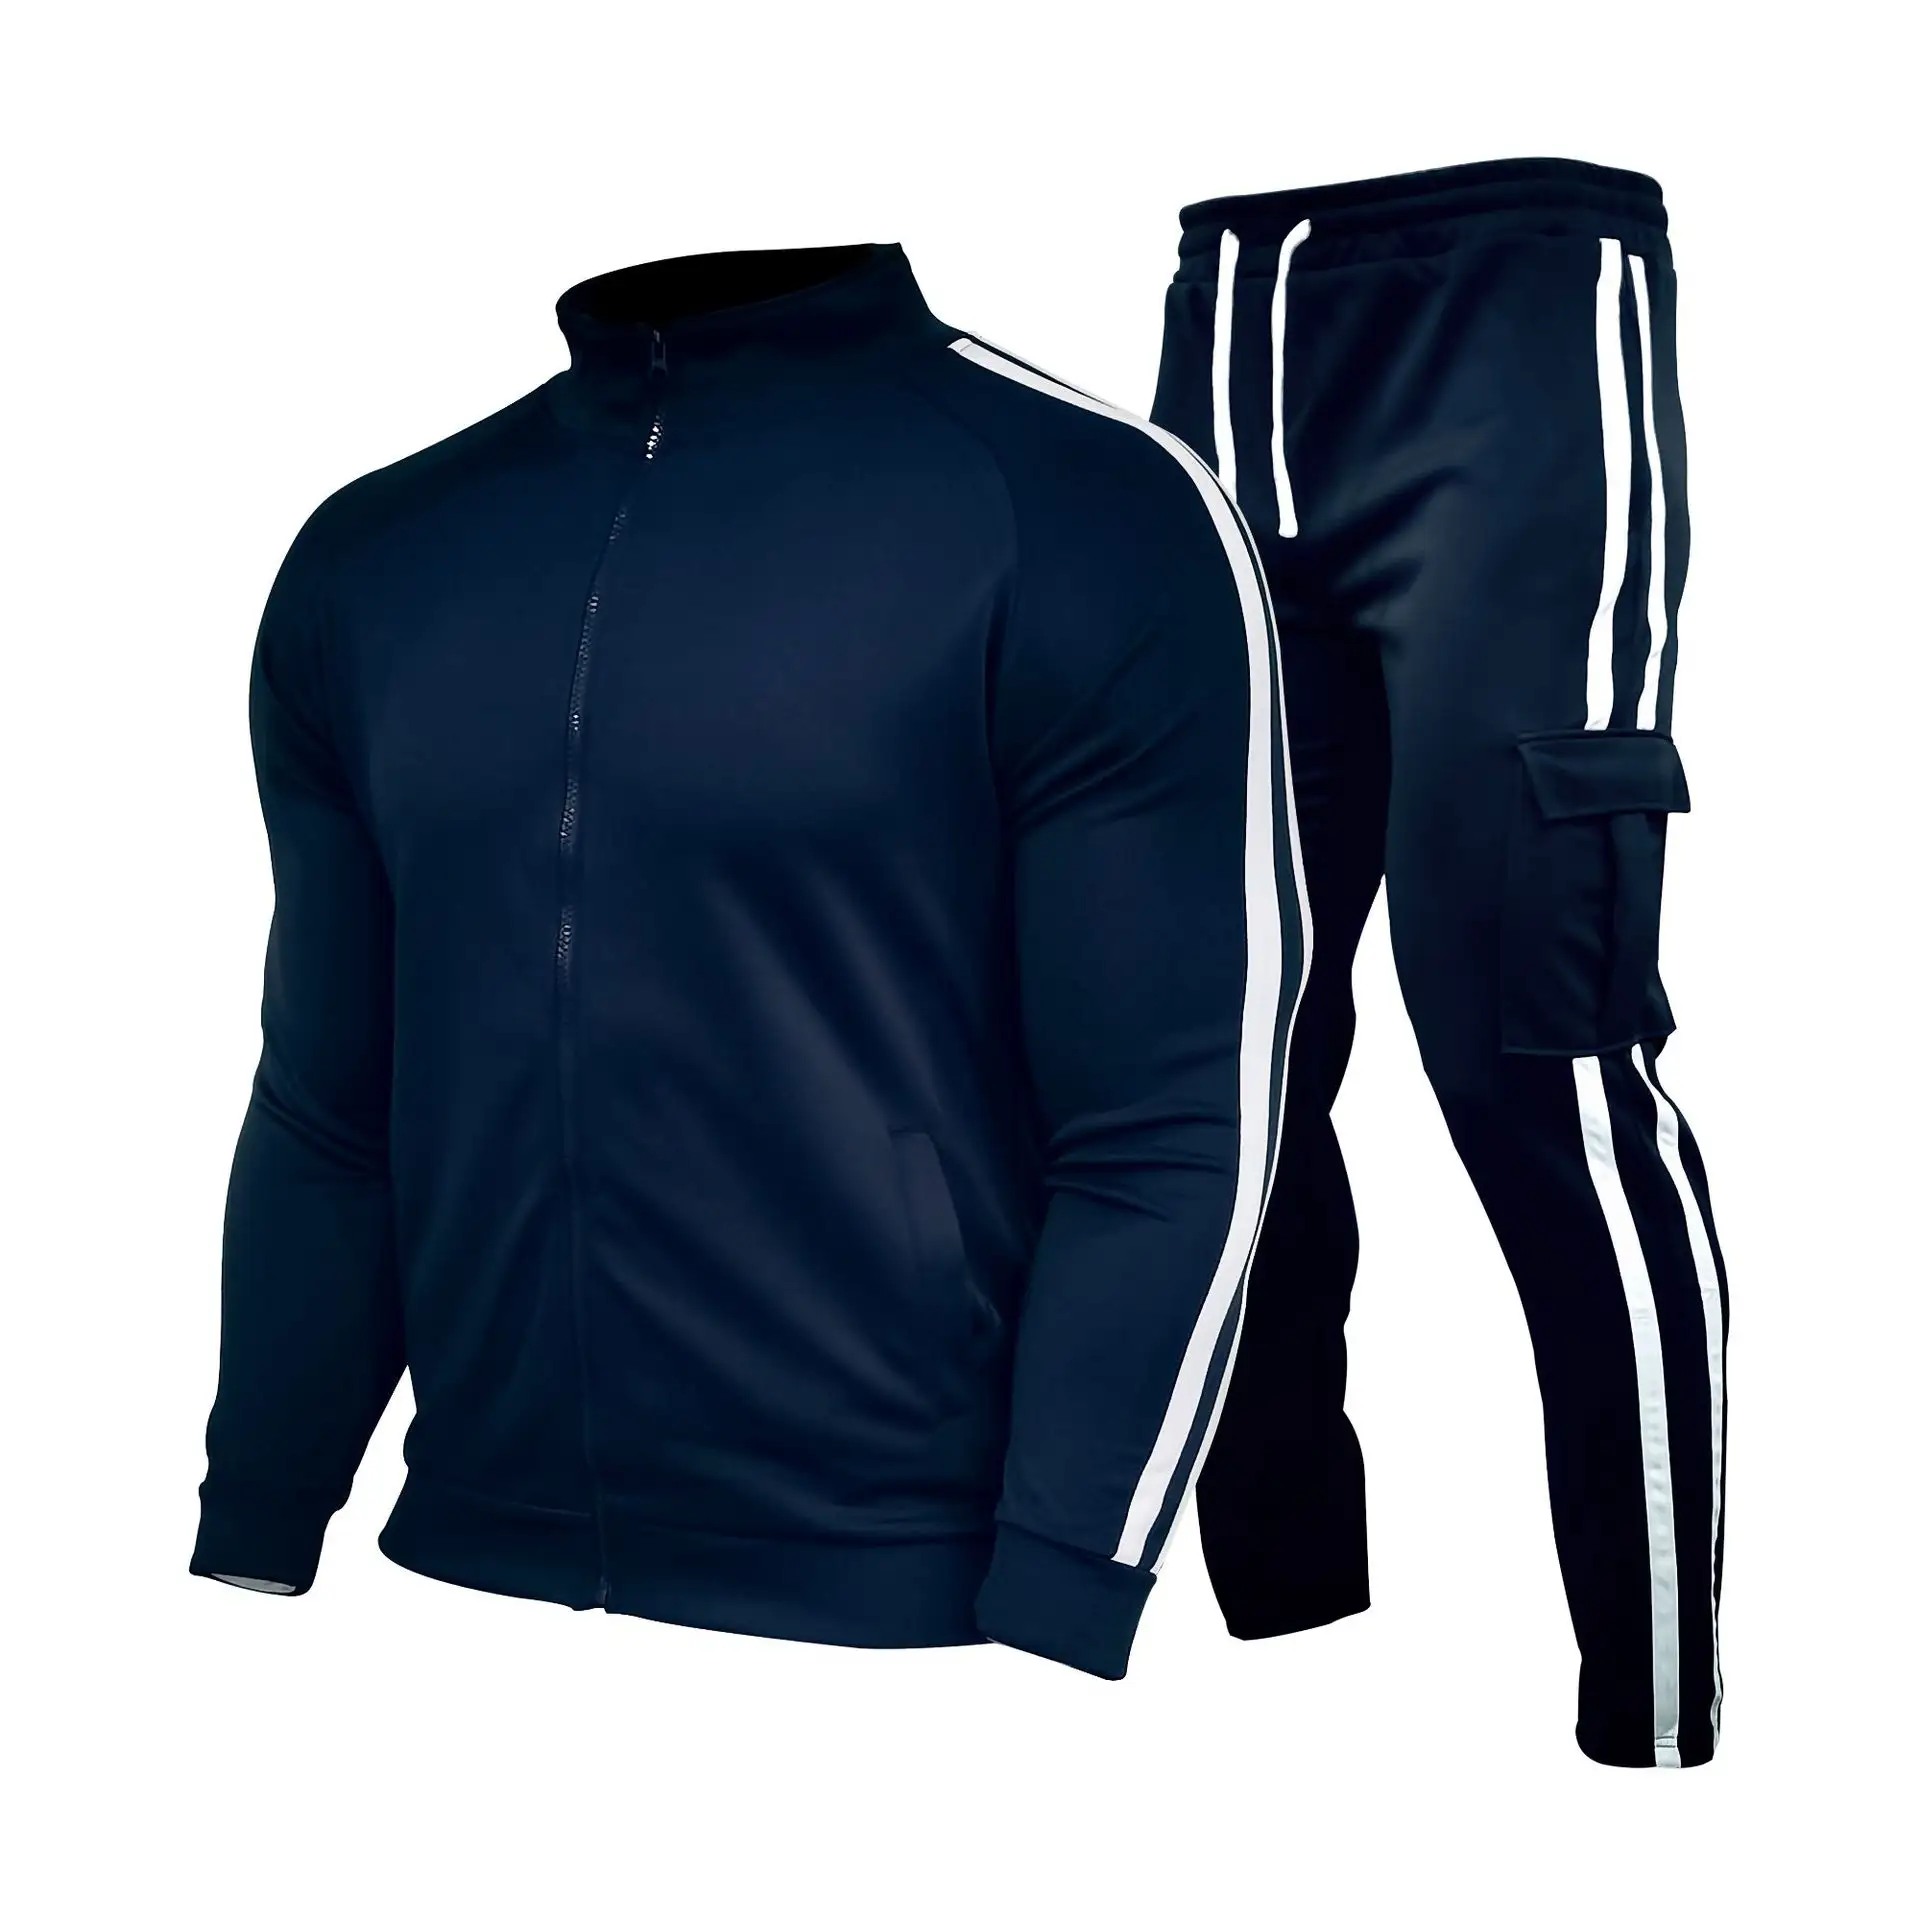 Toptan spor spor Fleeceing teknoloji iki parçalı takım elbise özel erkek Plaining çizgili eşofman takımı erkekler için